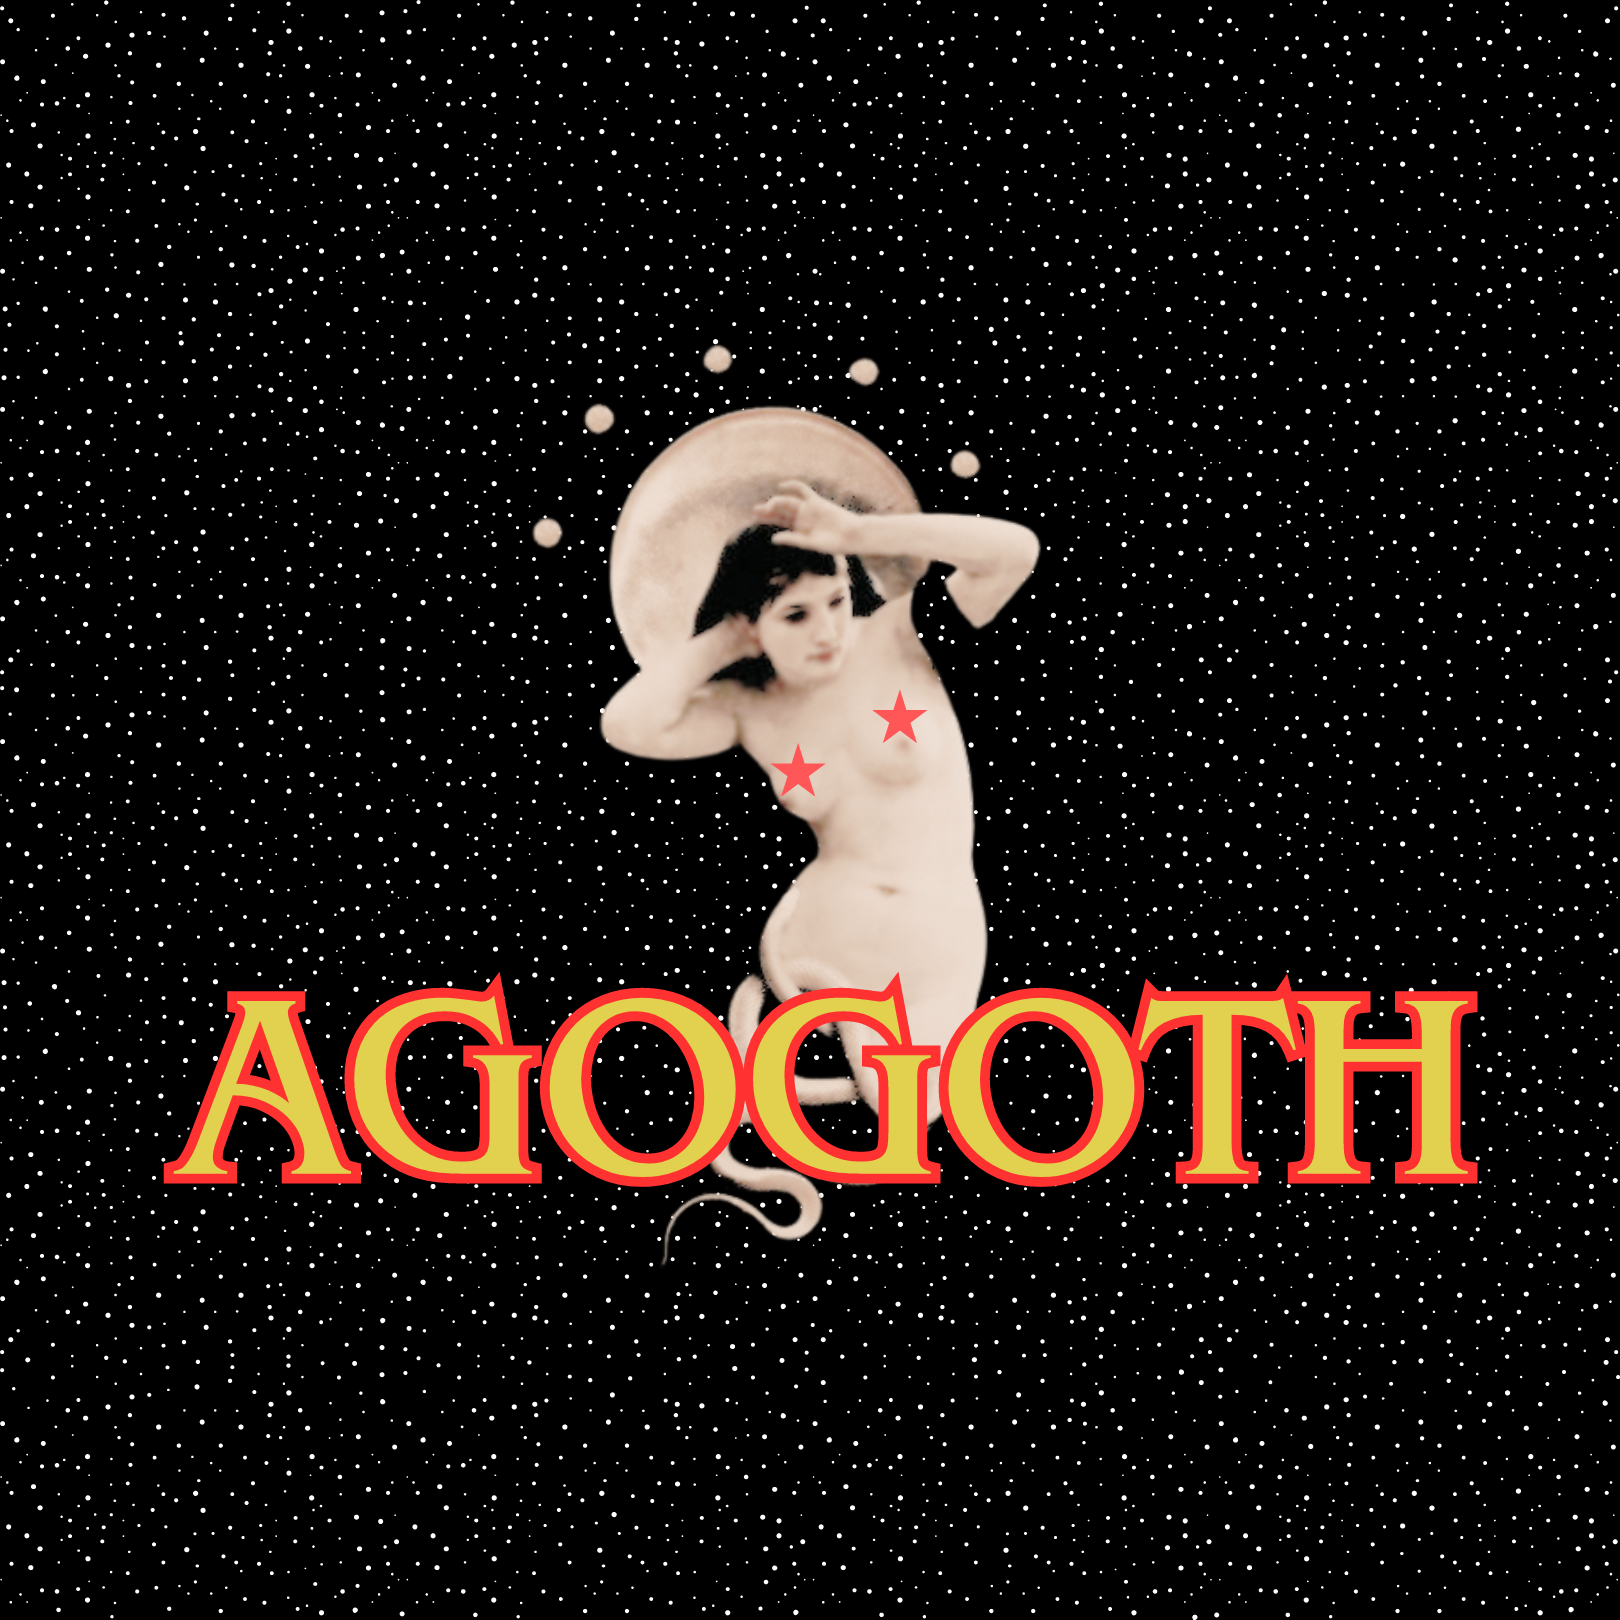 Agogoth